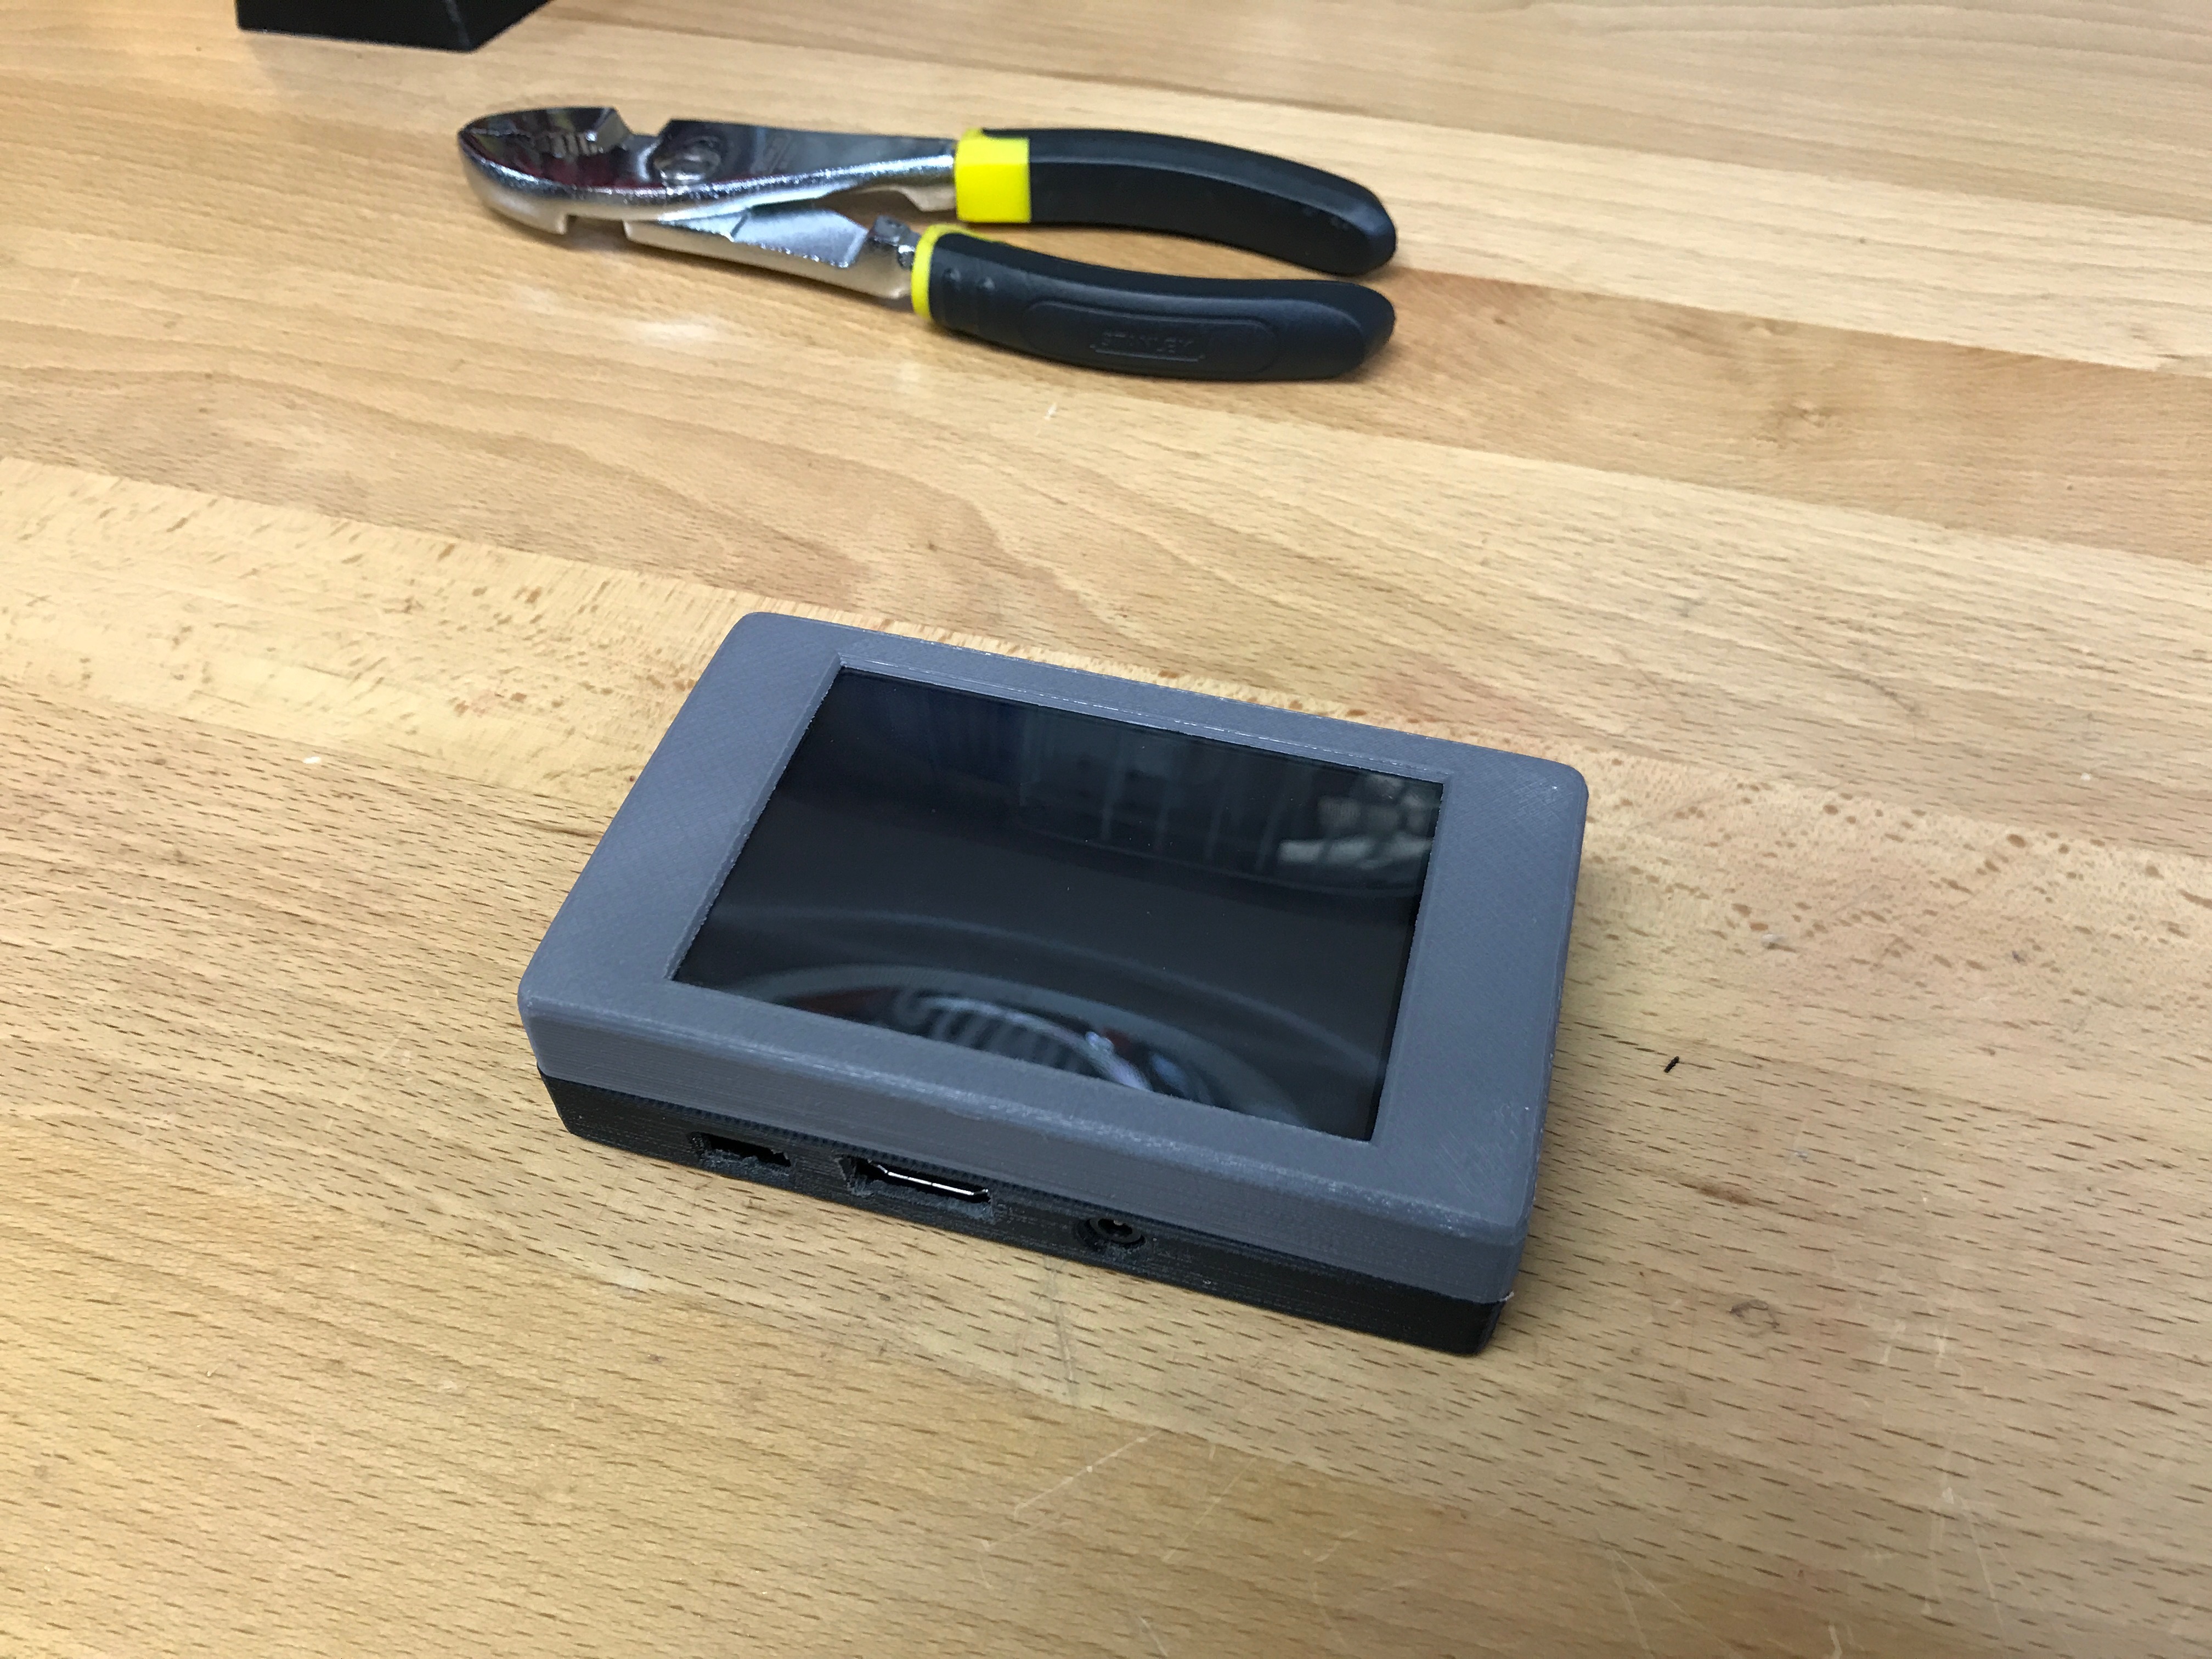 Raspberry Pi Touchscreen Octoprint Controller